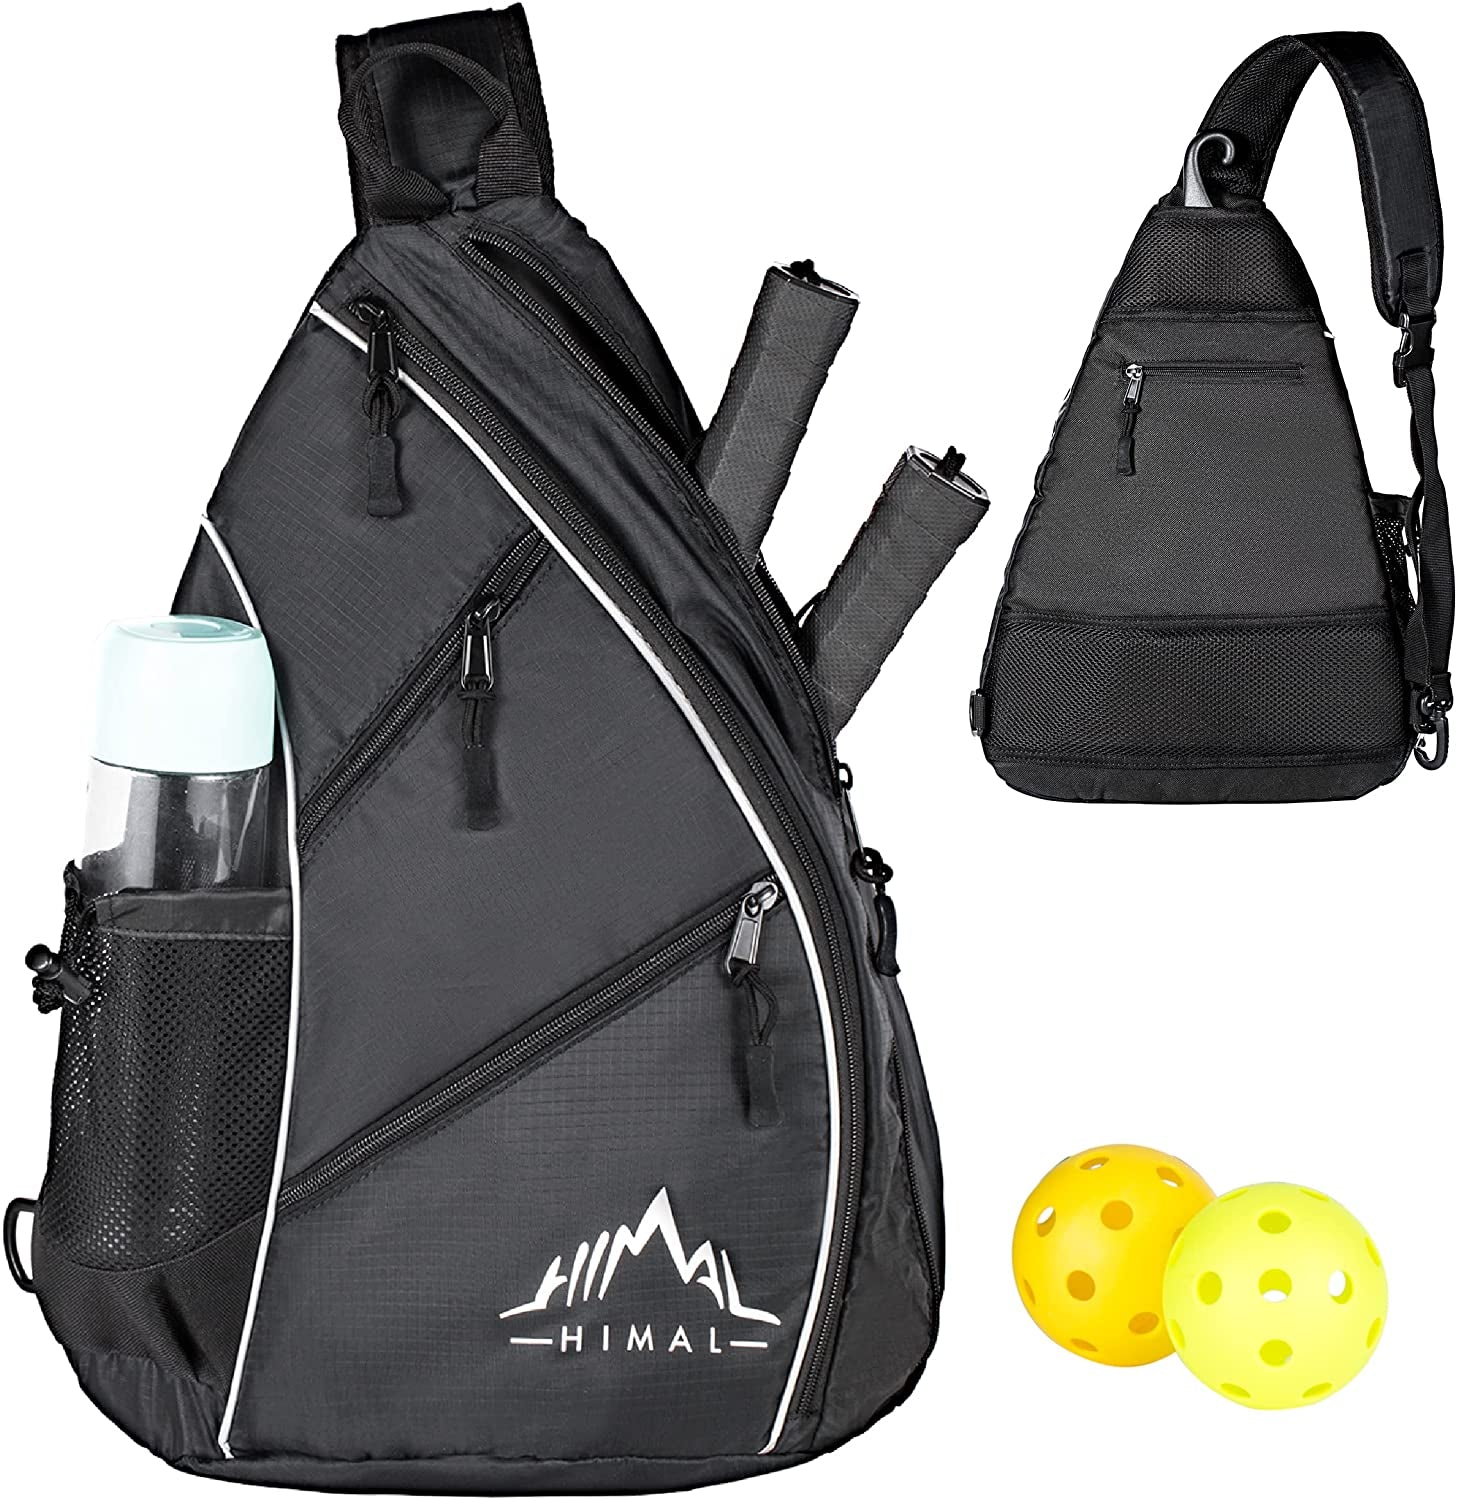 Pickleball Bag-Adjustable Pickleball,Tennis,Racketball Sling Bag-Pickleball Backpack with Water Bottle Holder for Men